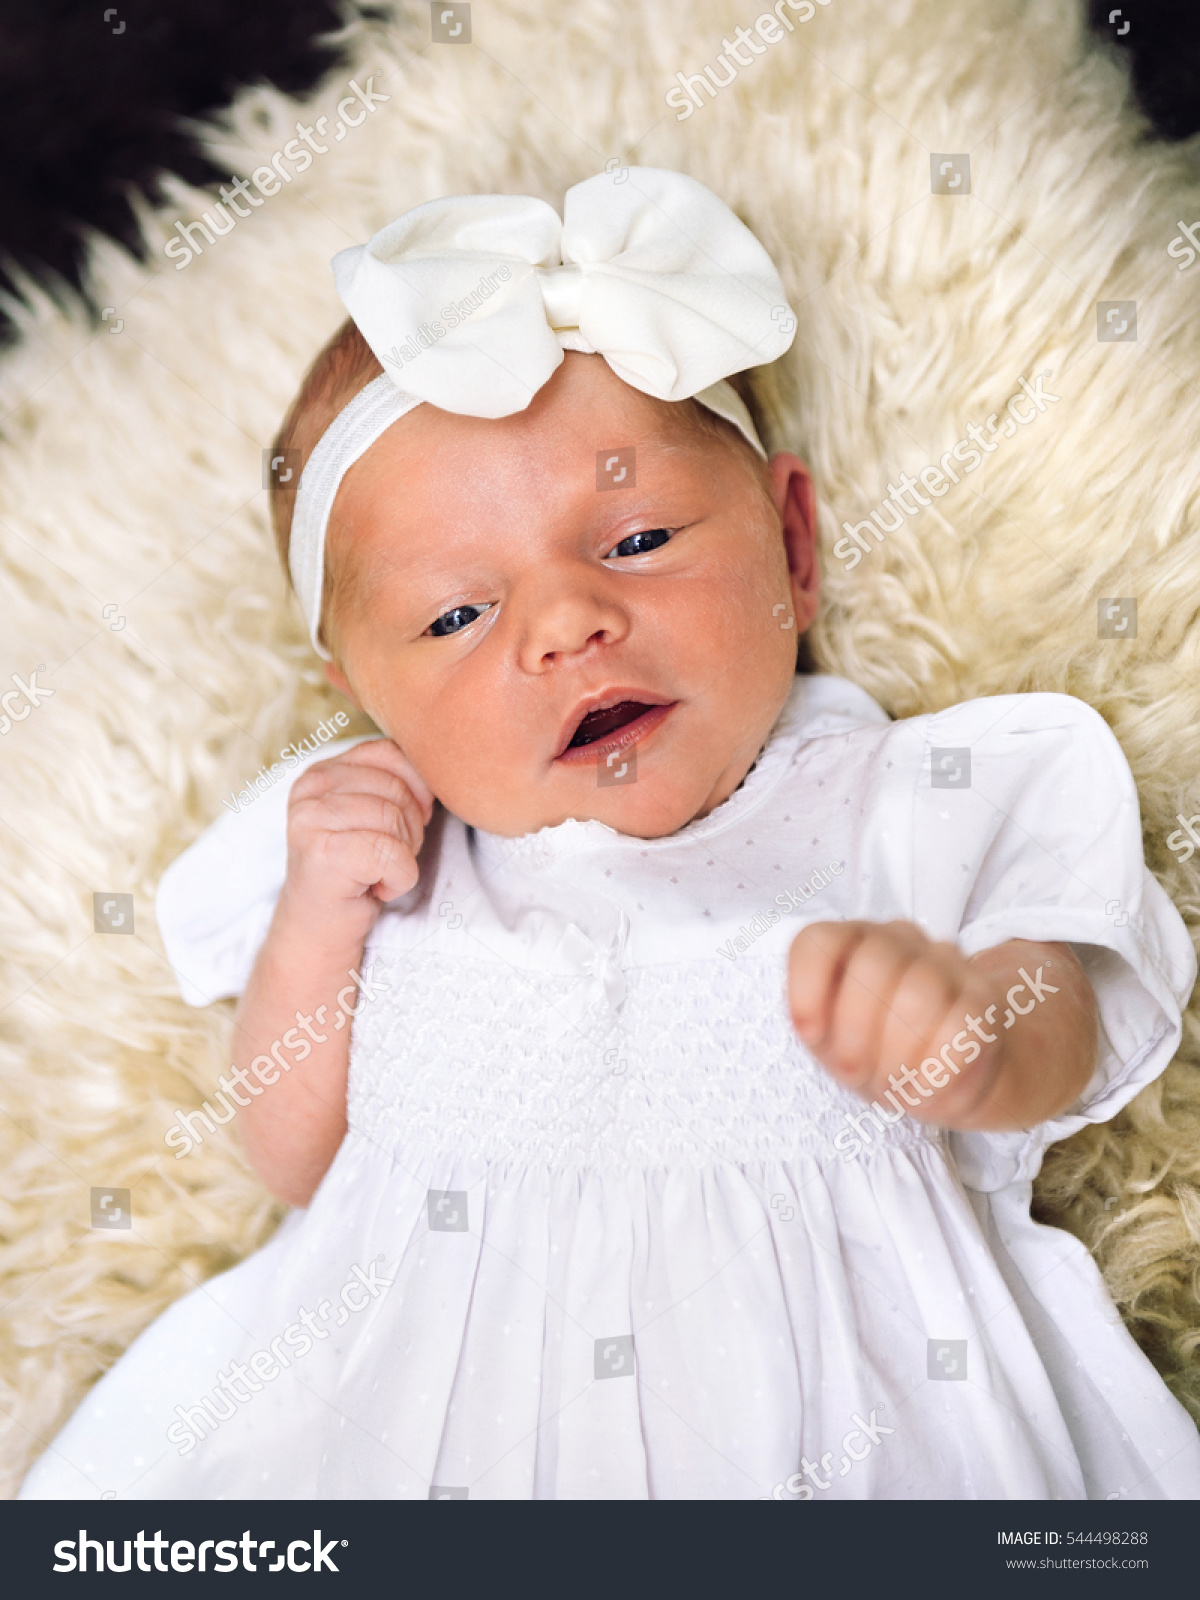 photoshoot newborn baby girl